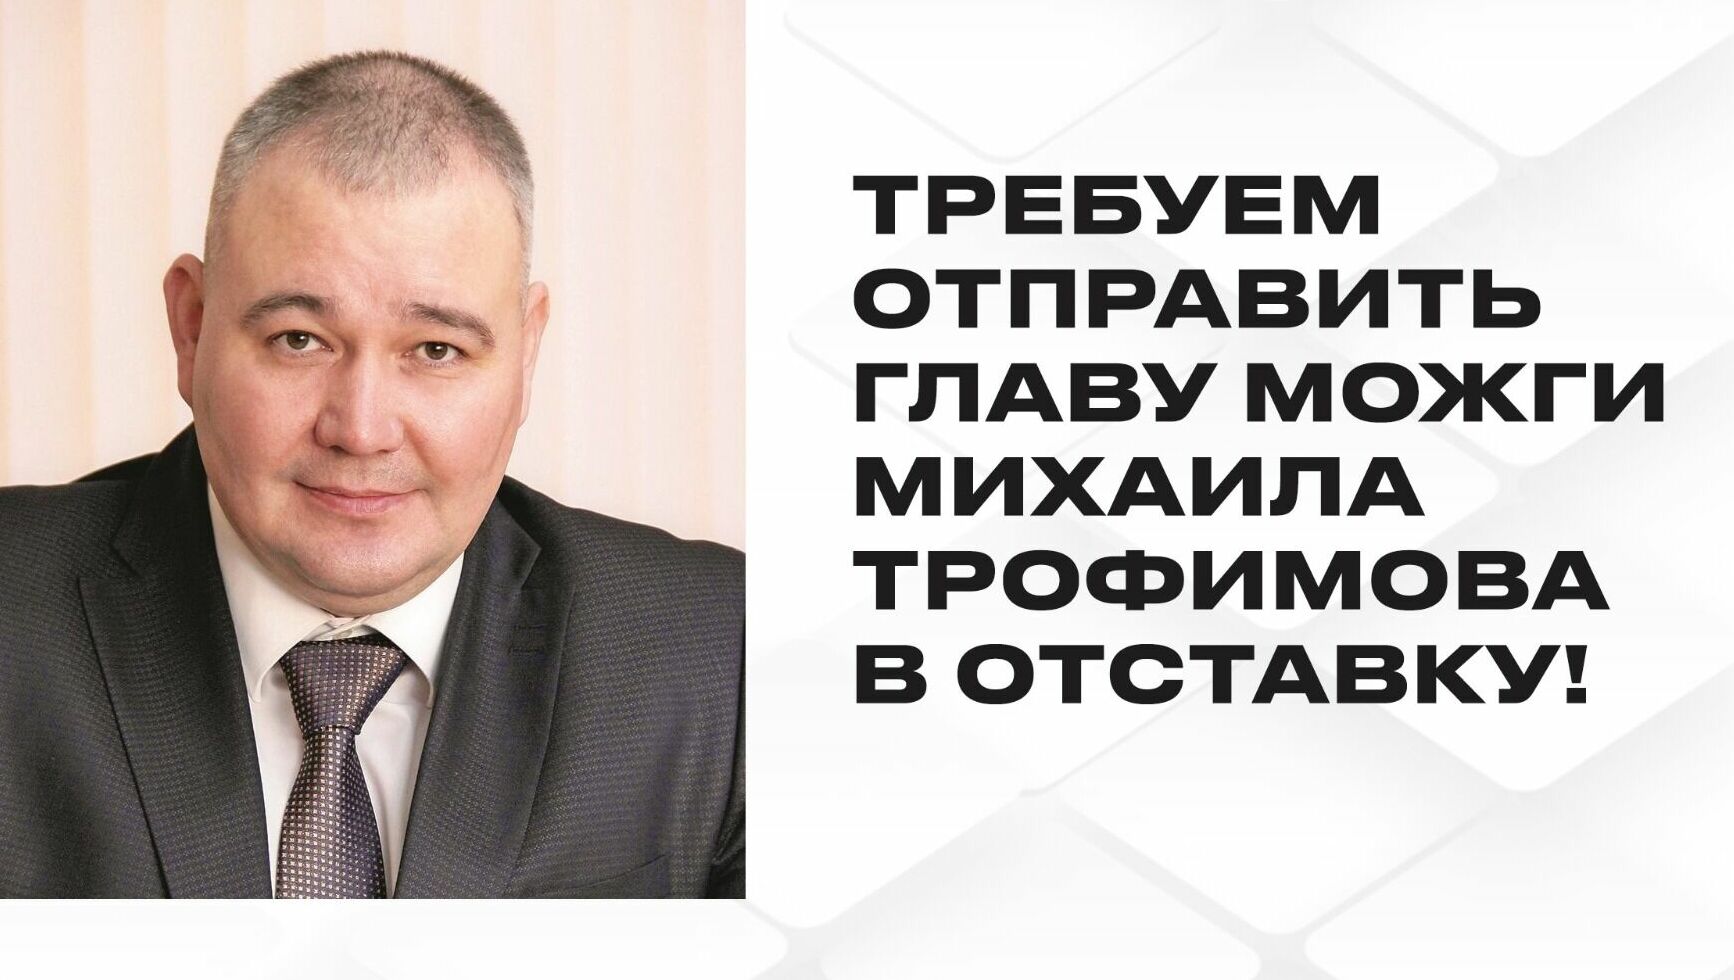 Жители Можги требуют отставки главы города Михаила Трофимова